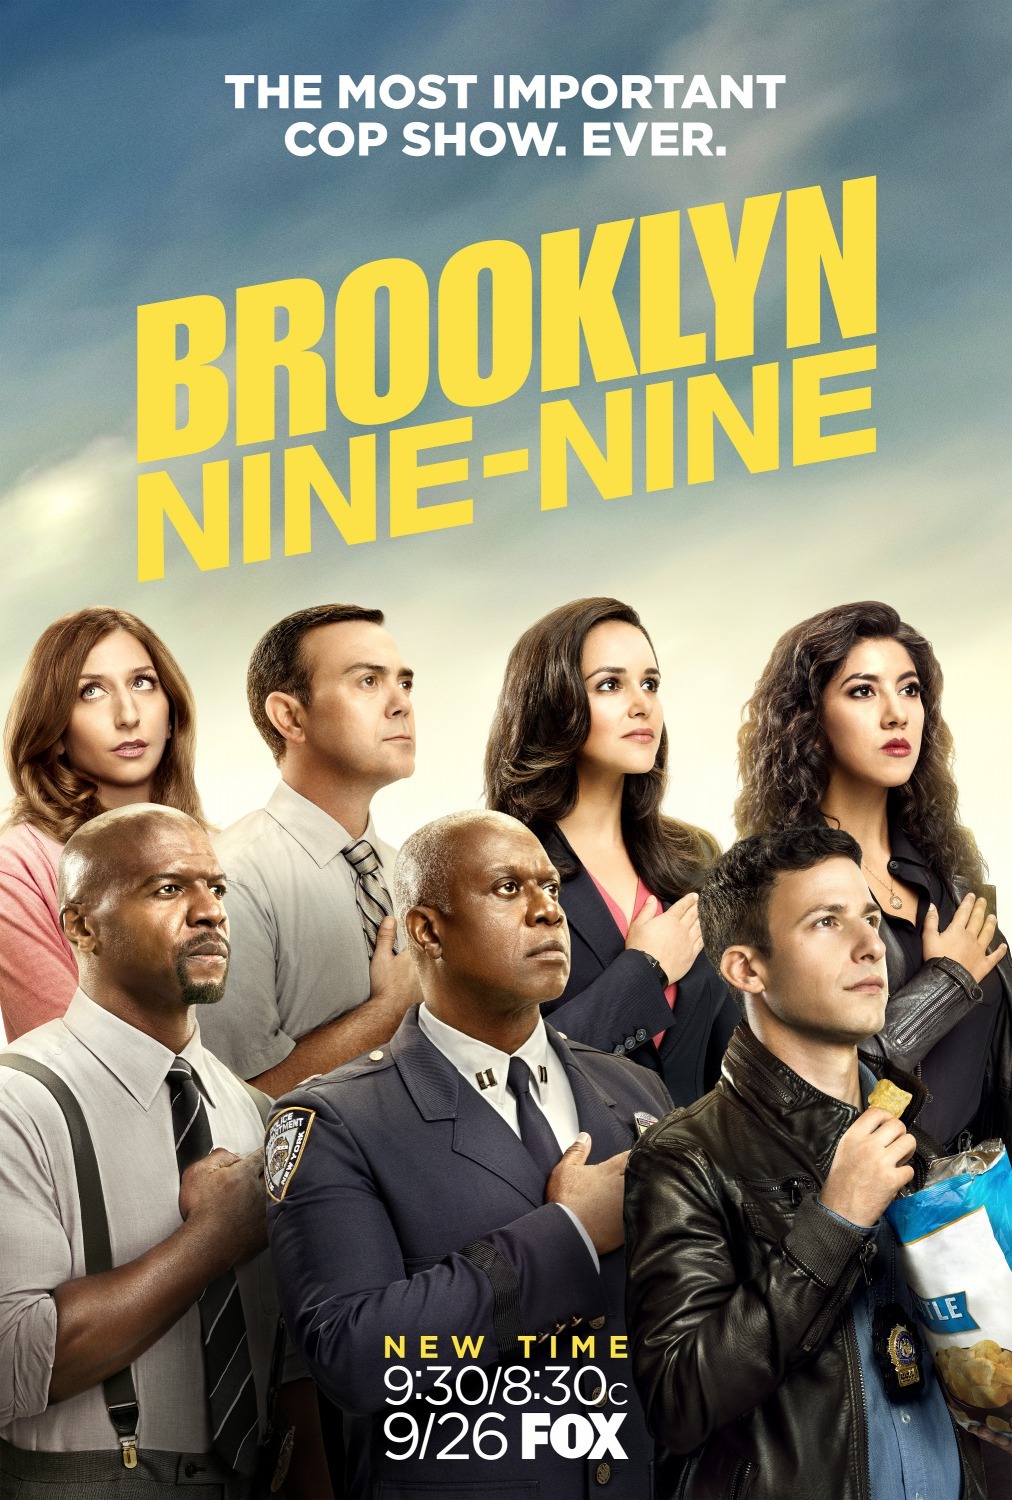 ดูหนังออนไลน์ฟรี Brooklyn Nine-Nine Season 4 EP.1 บรู๊คลินเก้า ปี 4 ตอนที่ 1